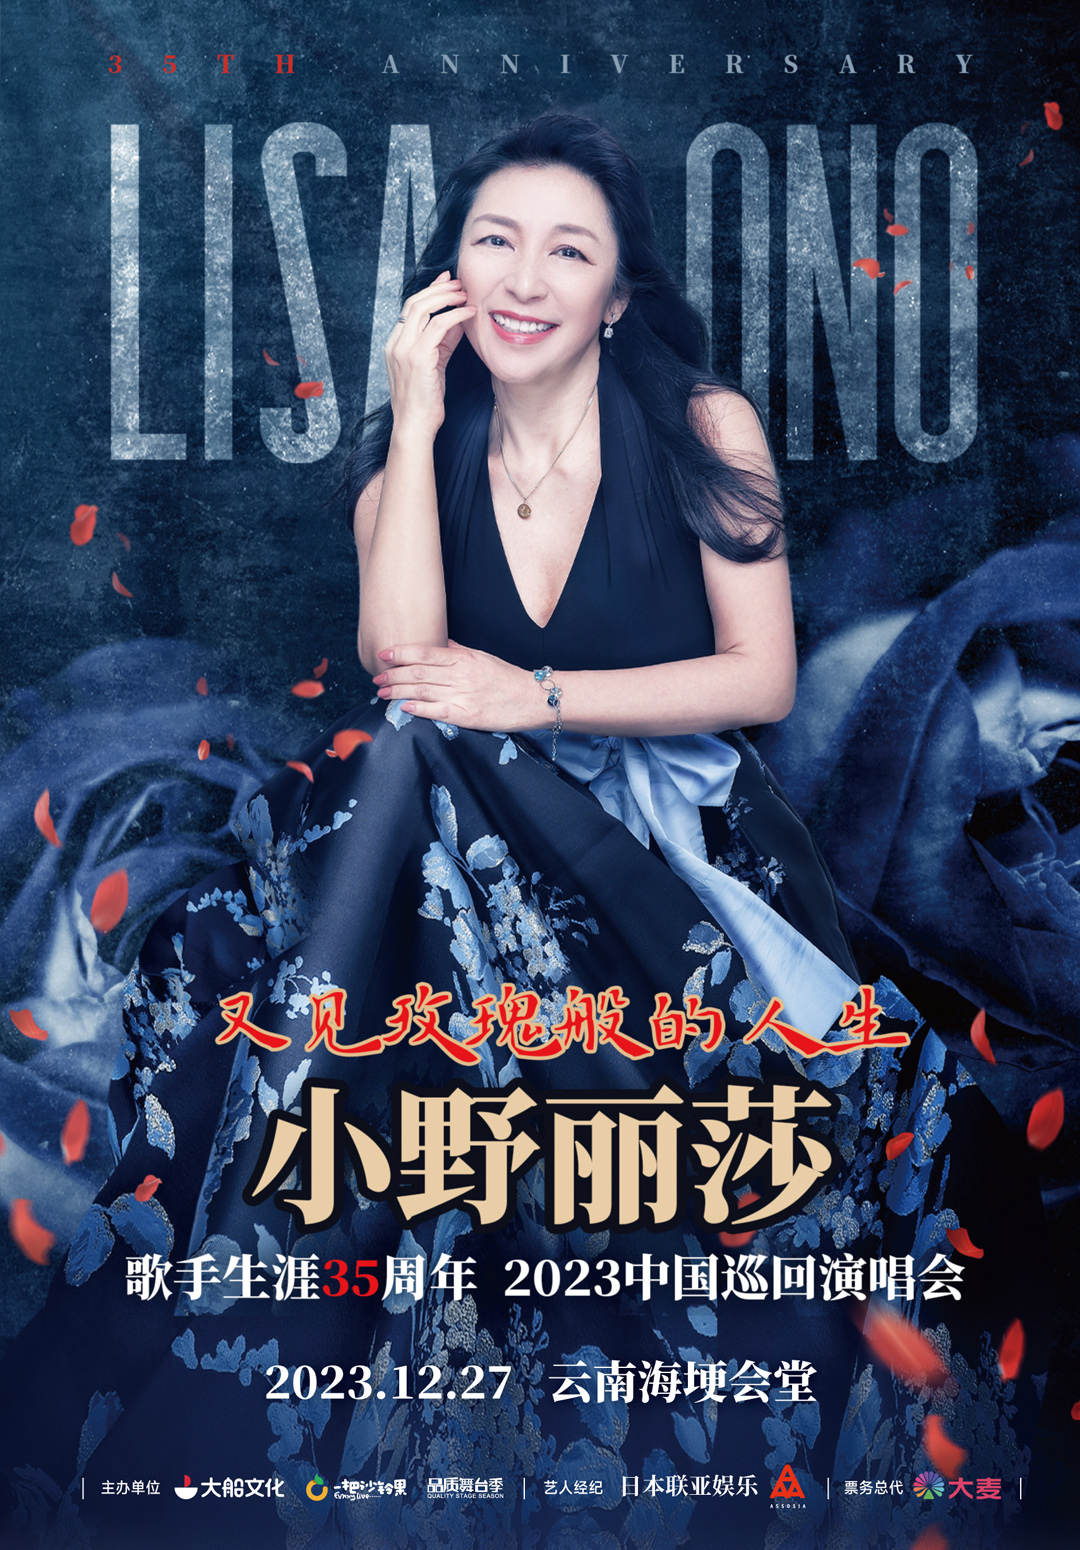 [昆明]又见玫瑰般的人生·小野丽莎 歌手生涯35周年2023中国巡回演唱会昆明站